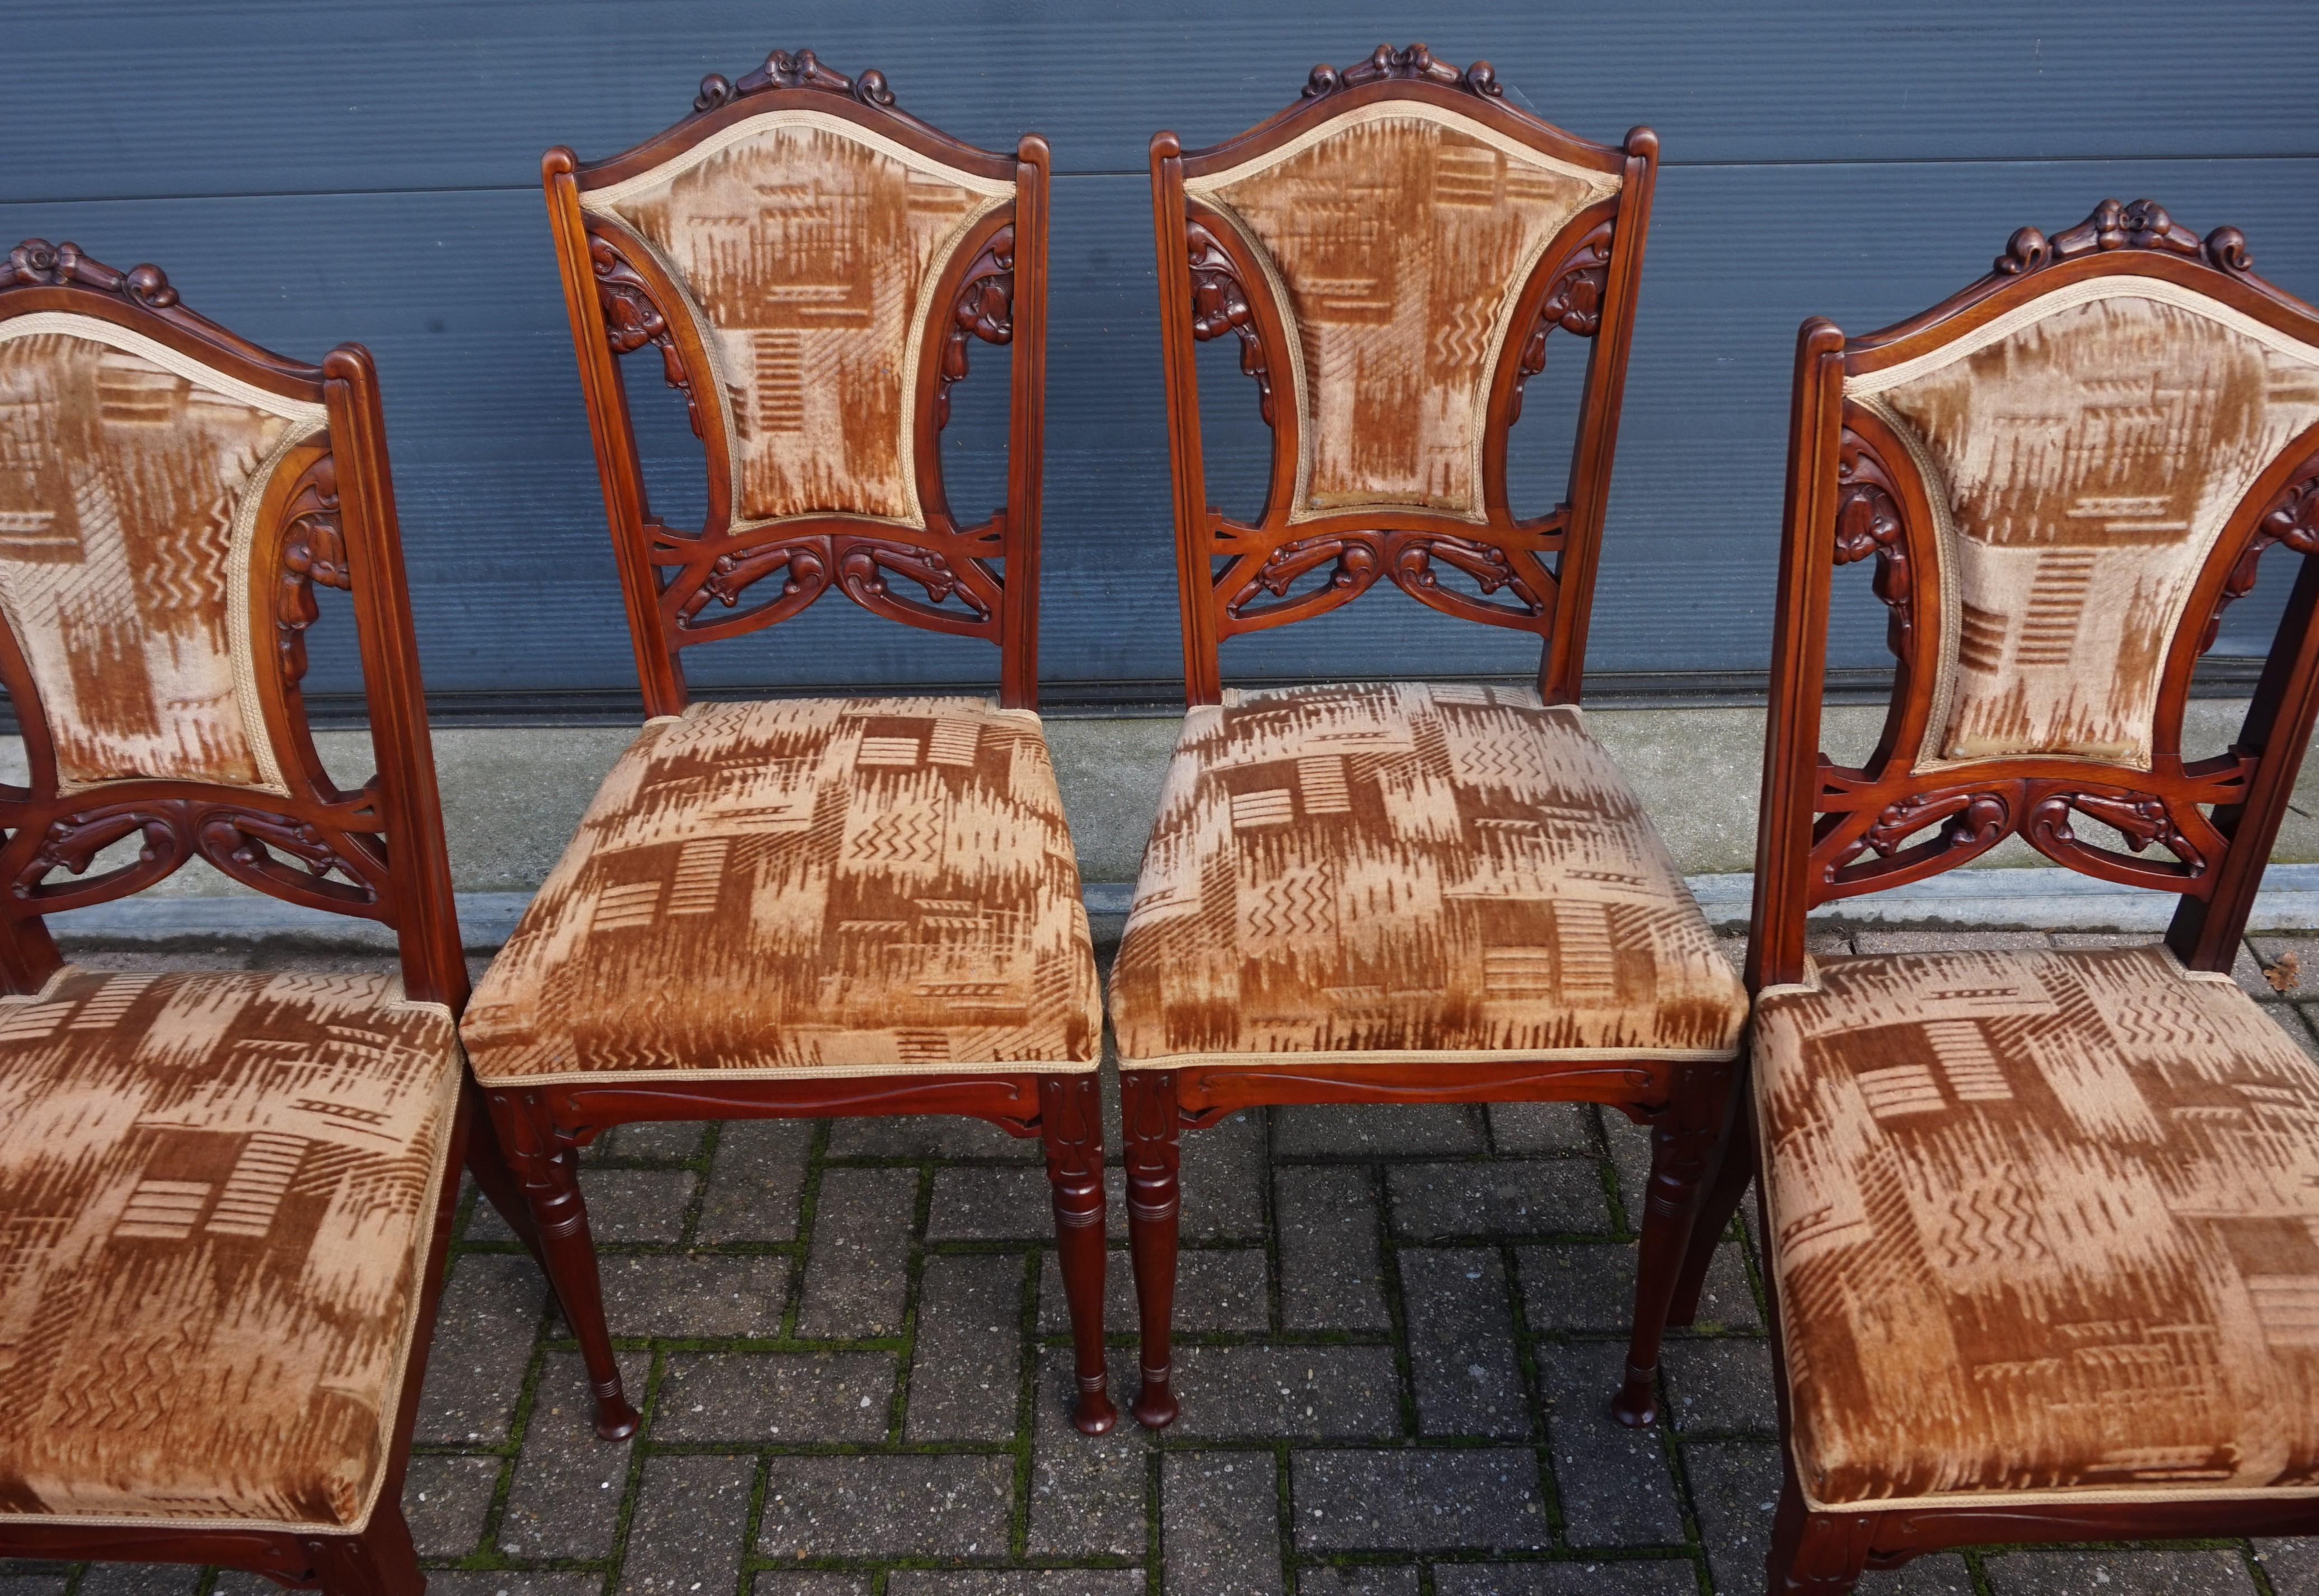 Ensemble de 6 chaises Art Nouveau avec de superbes motifs floraux sculptés à la main.

La qualité des matériaux avec lesquels ces chaises Arts & Crafts ont été fabriquées ainsi que la qualité du travail qui a permis de créer, entre autres, le décor